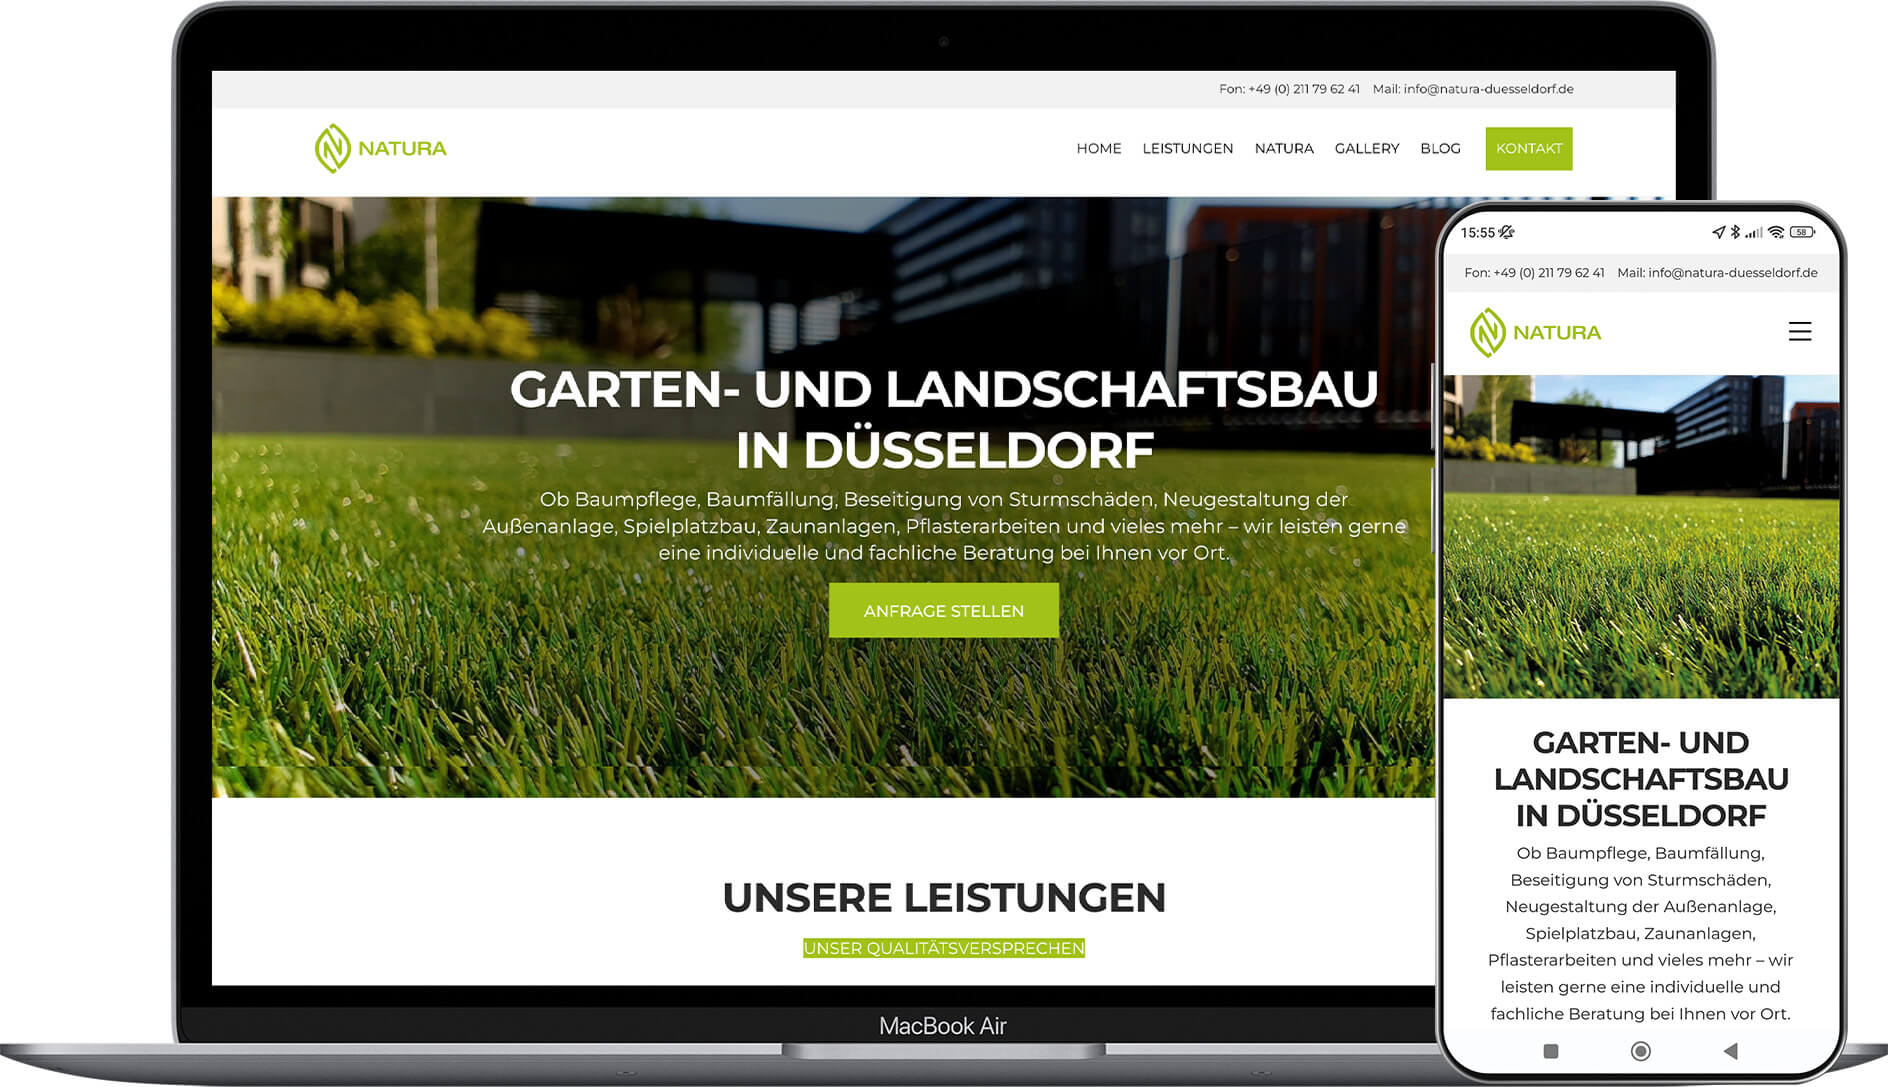 Natura Becher: Konzeption & Umsetzung Website, SEO, Google Ads, Printmedien